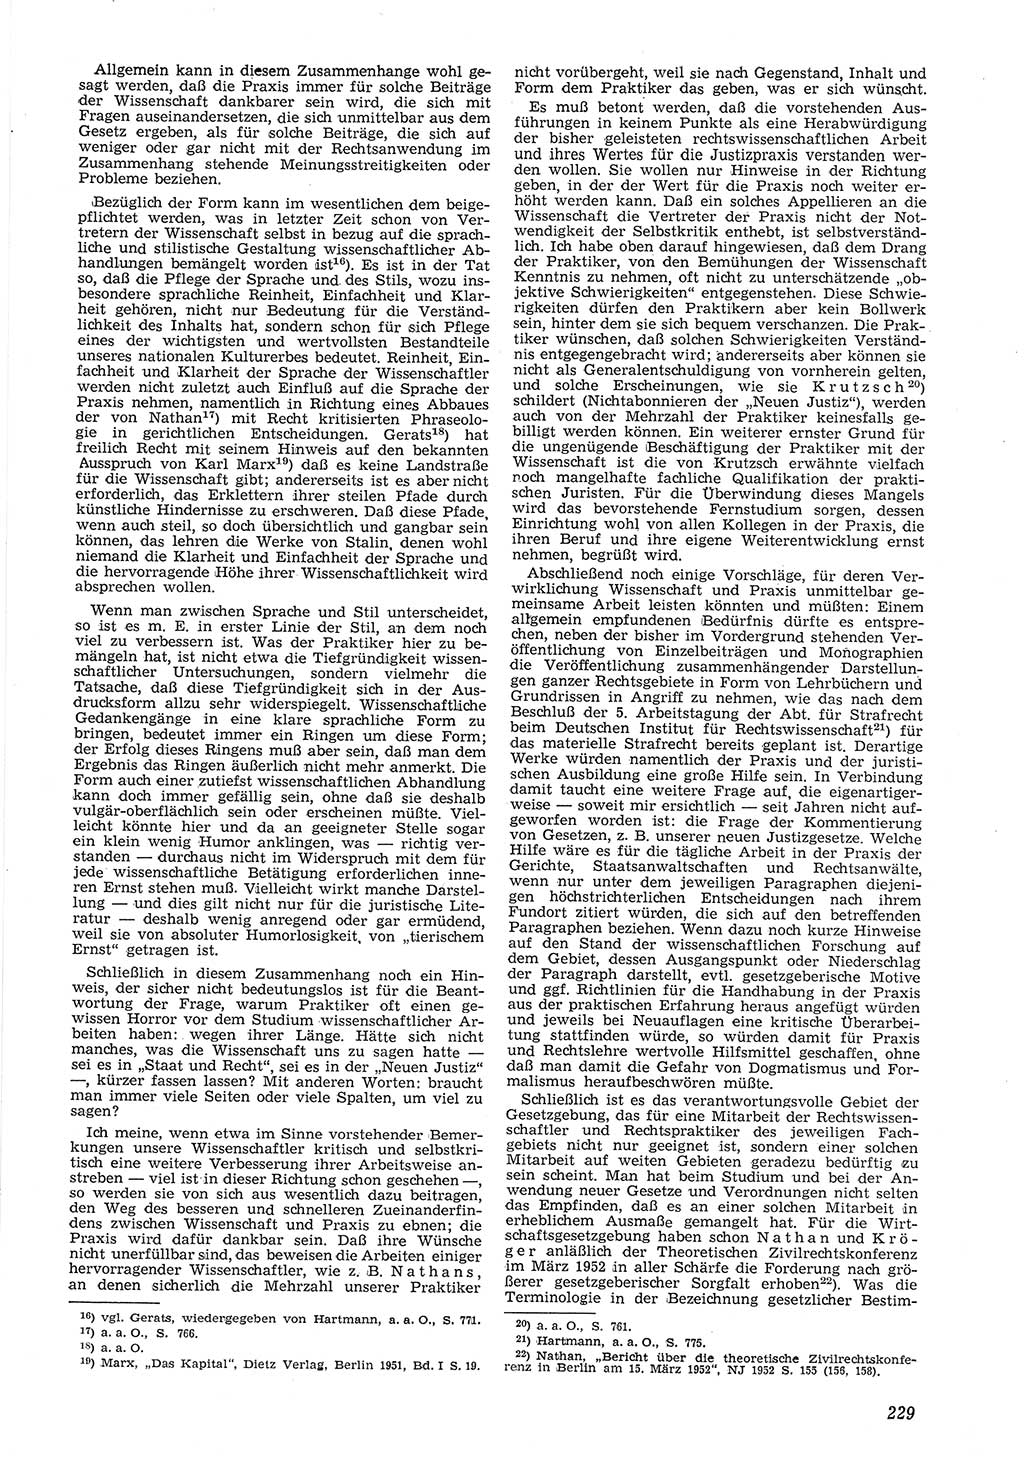 Neue Justiz (NJ), Zeitschrift für Recht und Rechtswissenschaft [Deutsche Demokratische Republik (DDR)], 8. Jahrgang 1954, Seite 229 (NJ DDR 1954, S. 229)